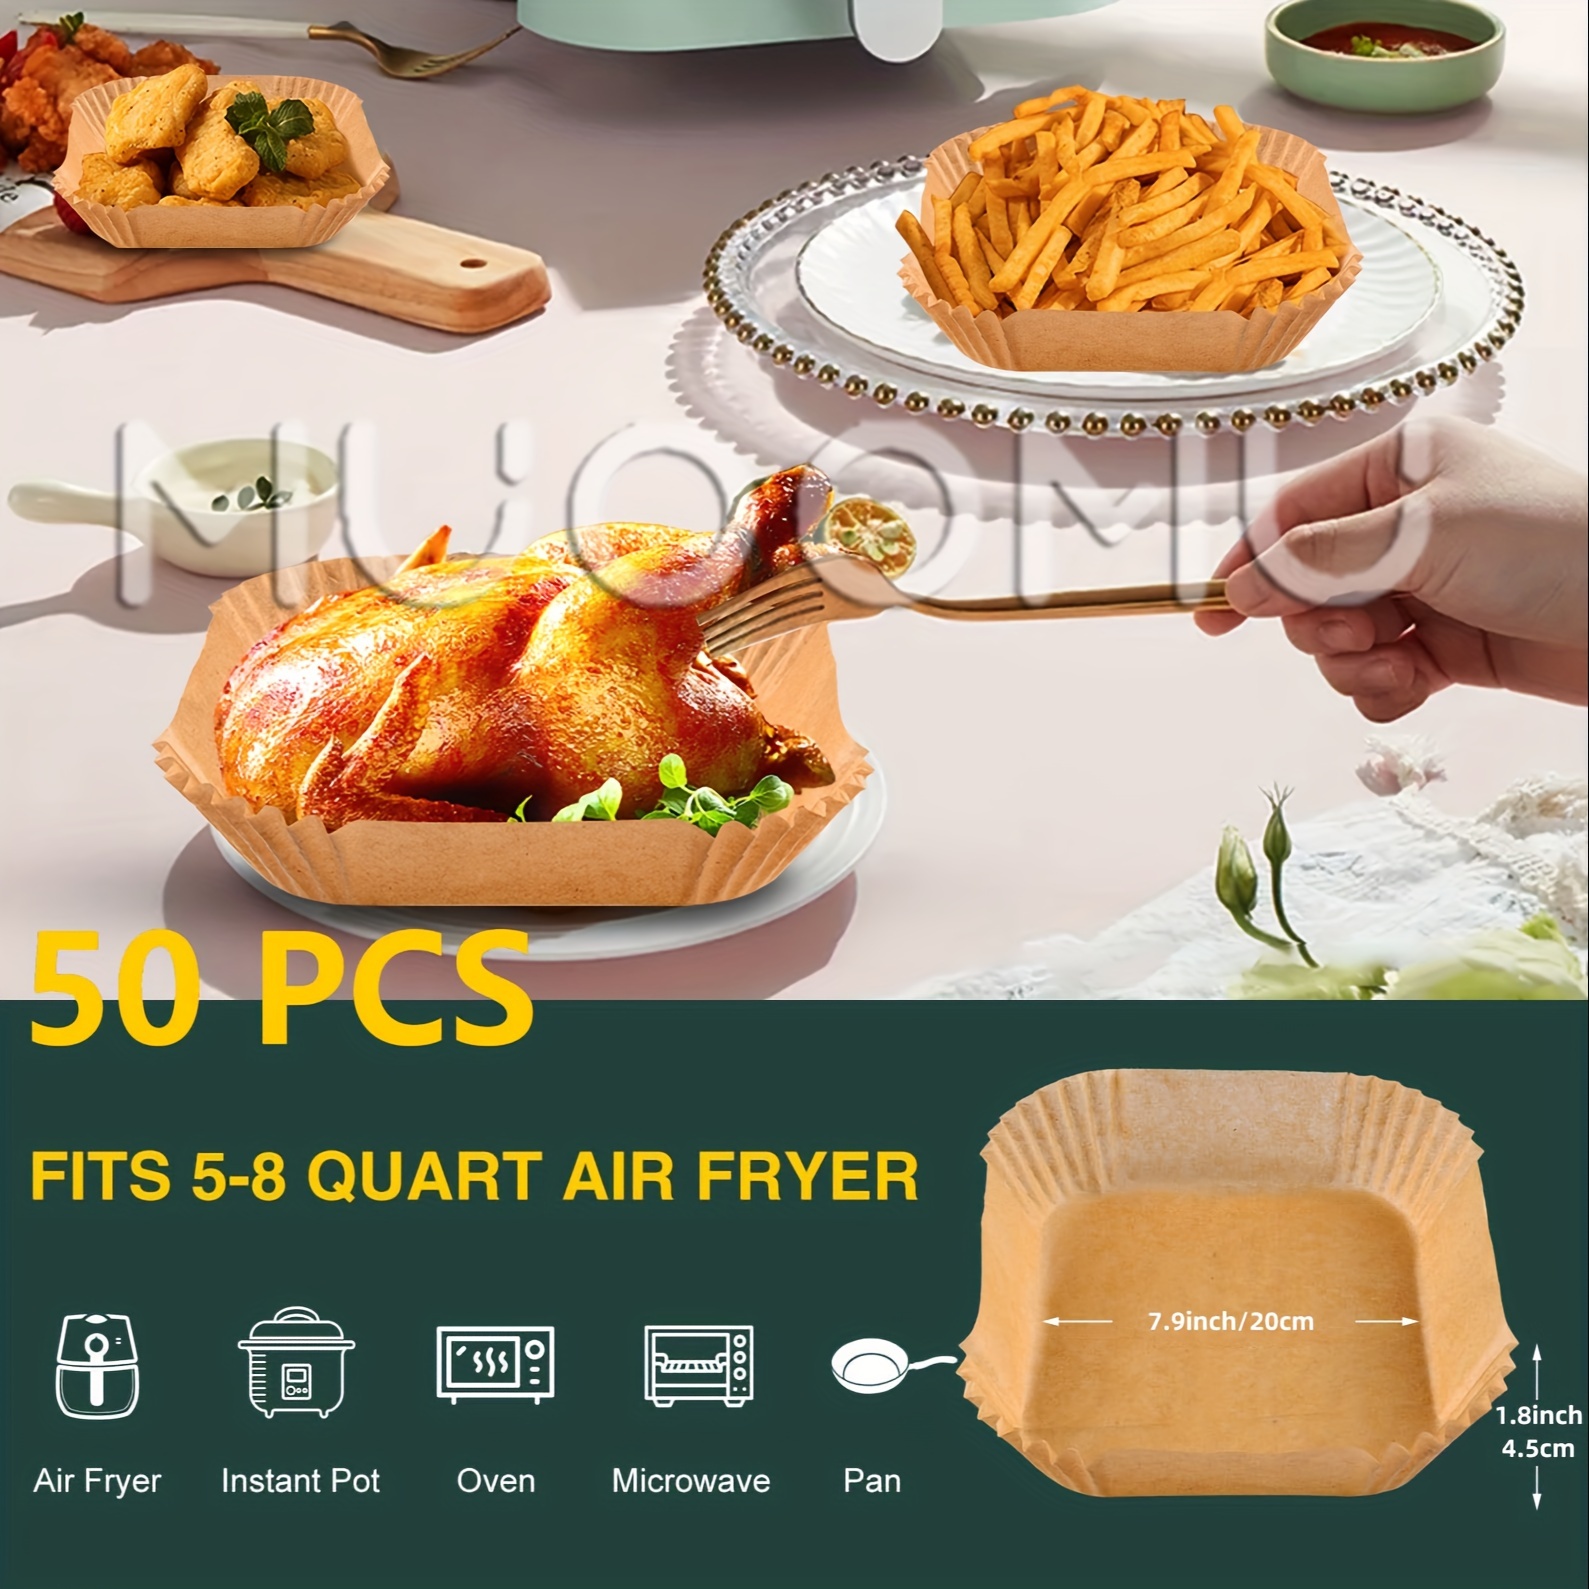 50pcs Rectangle Air Fryer Liners, Parchment Paper Sheets, Non